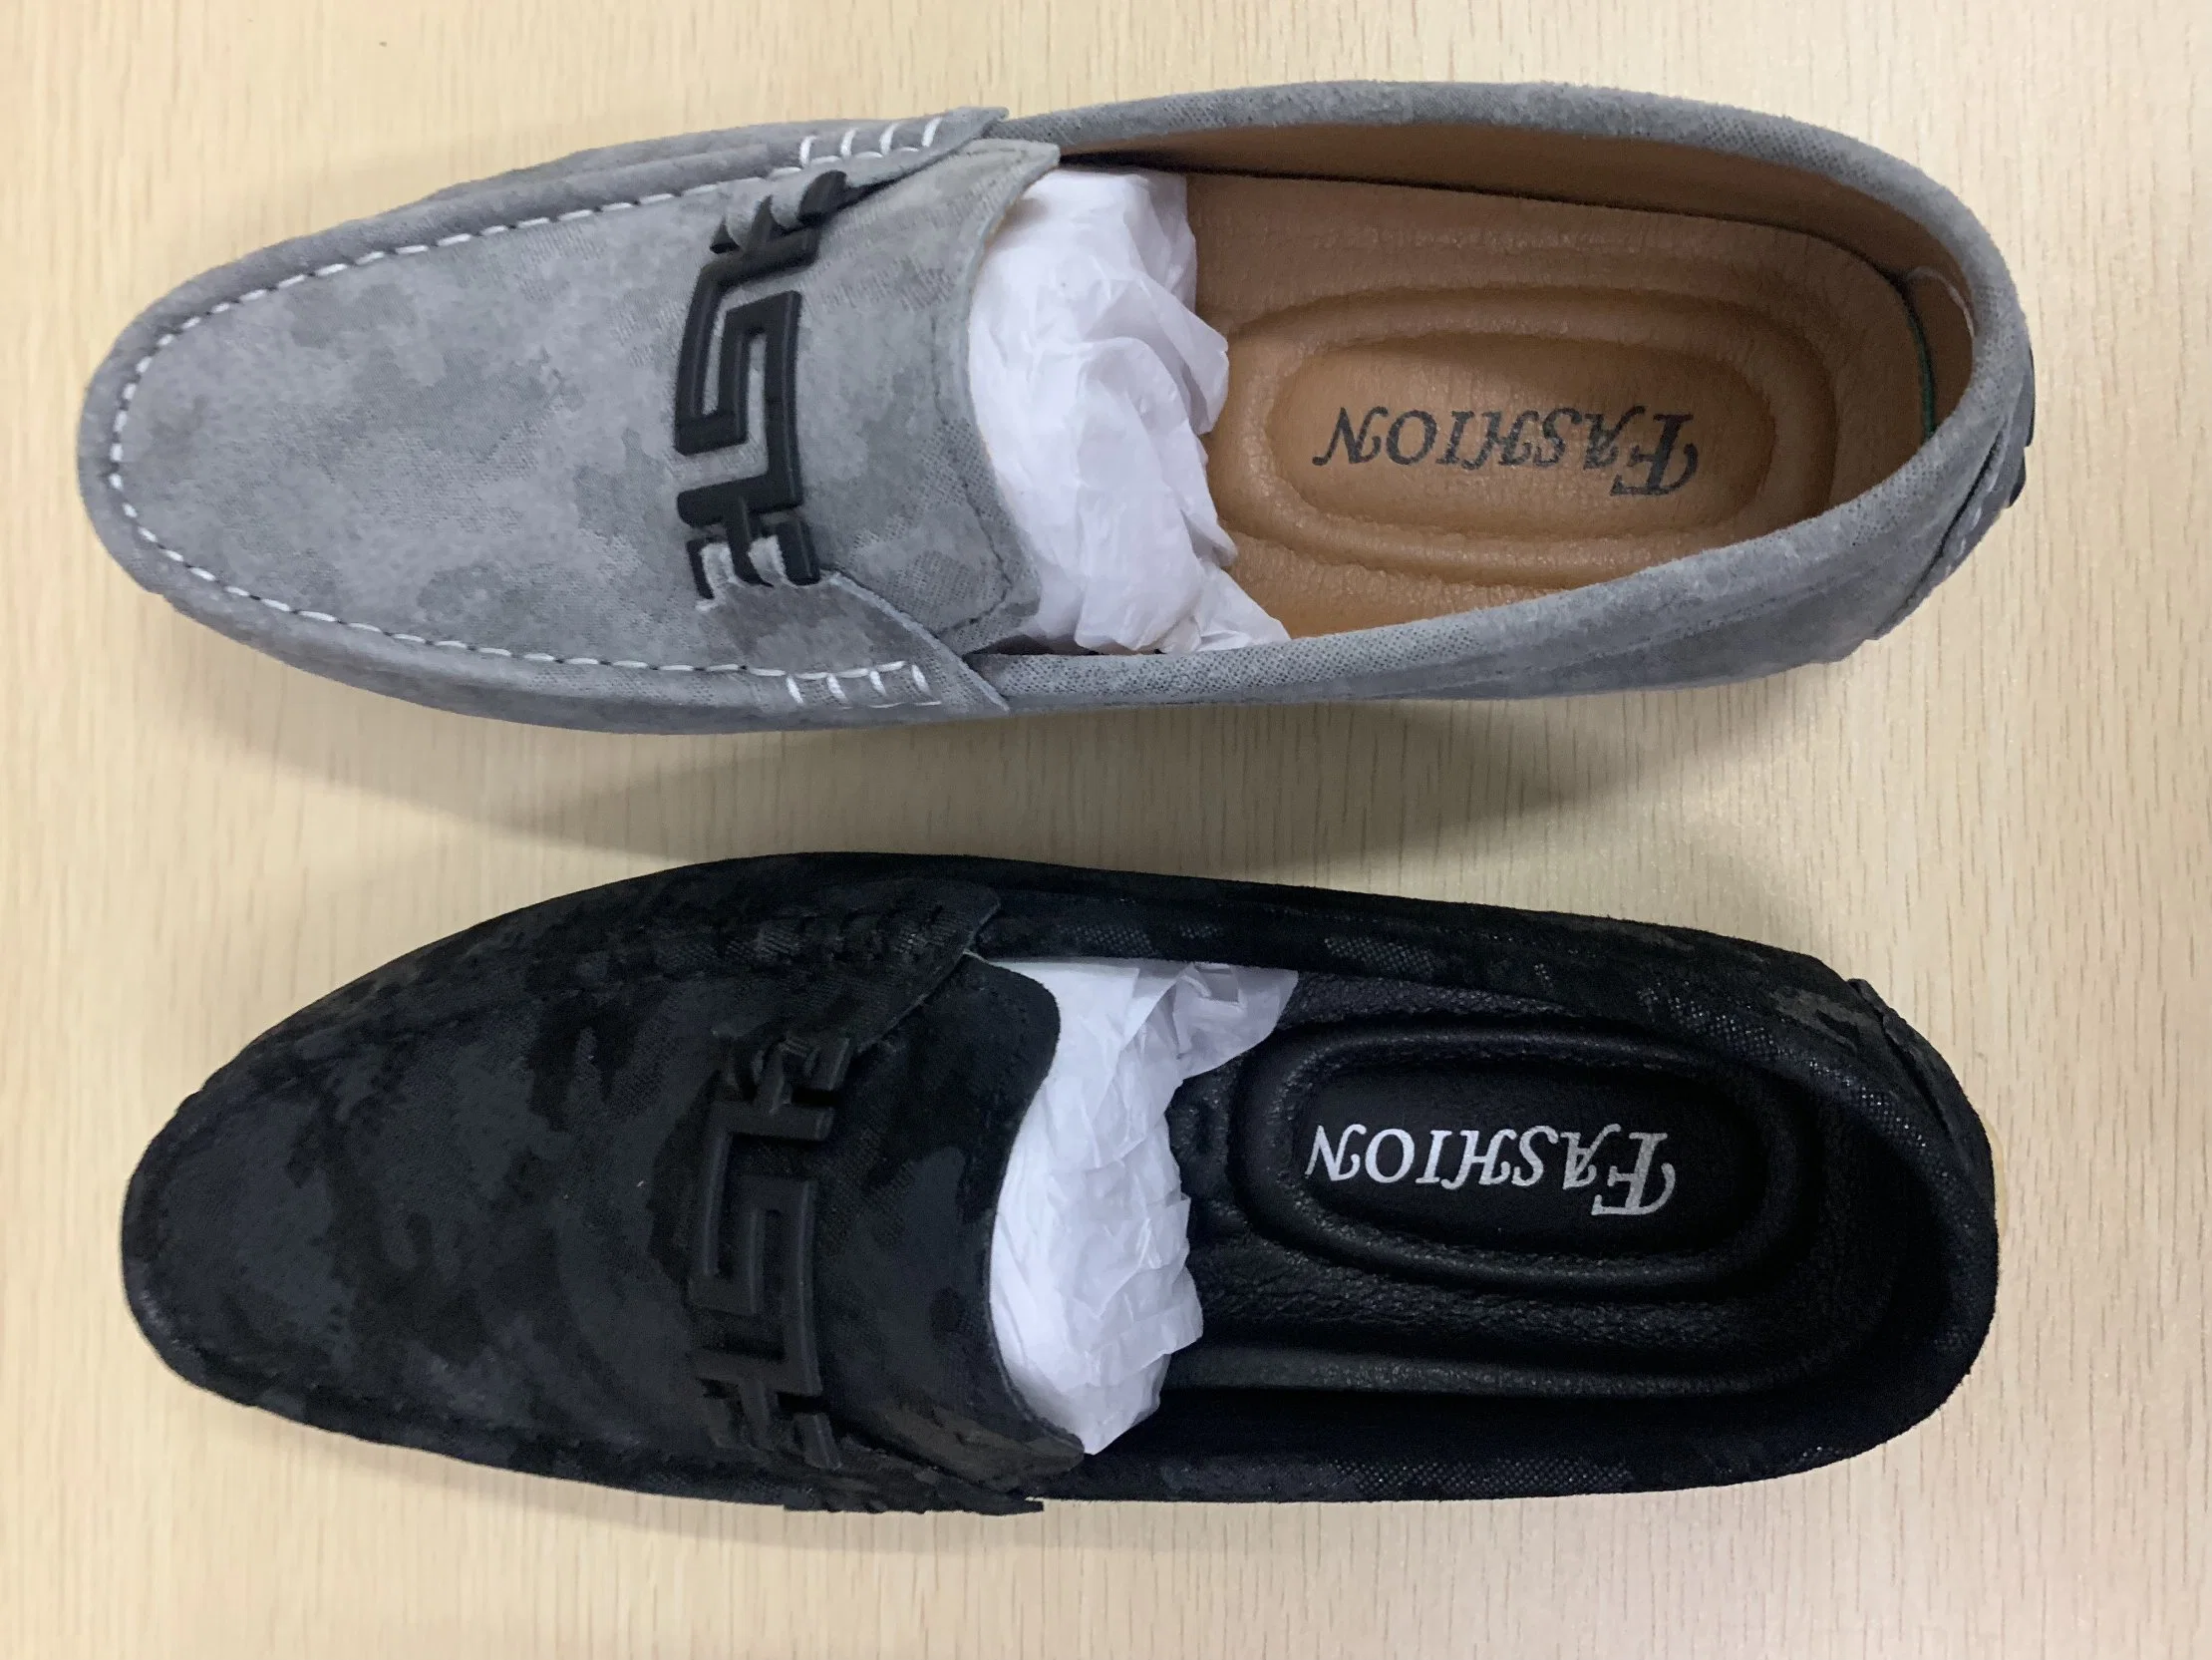 Novo modelo de calçado de lado as sapatas Moccasin-Gommino calçado de couro plana Casual Sapatas Homens